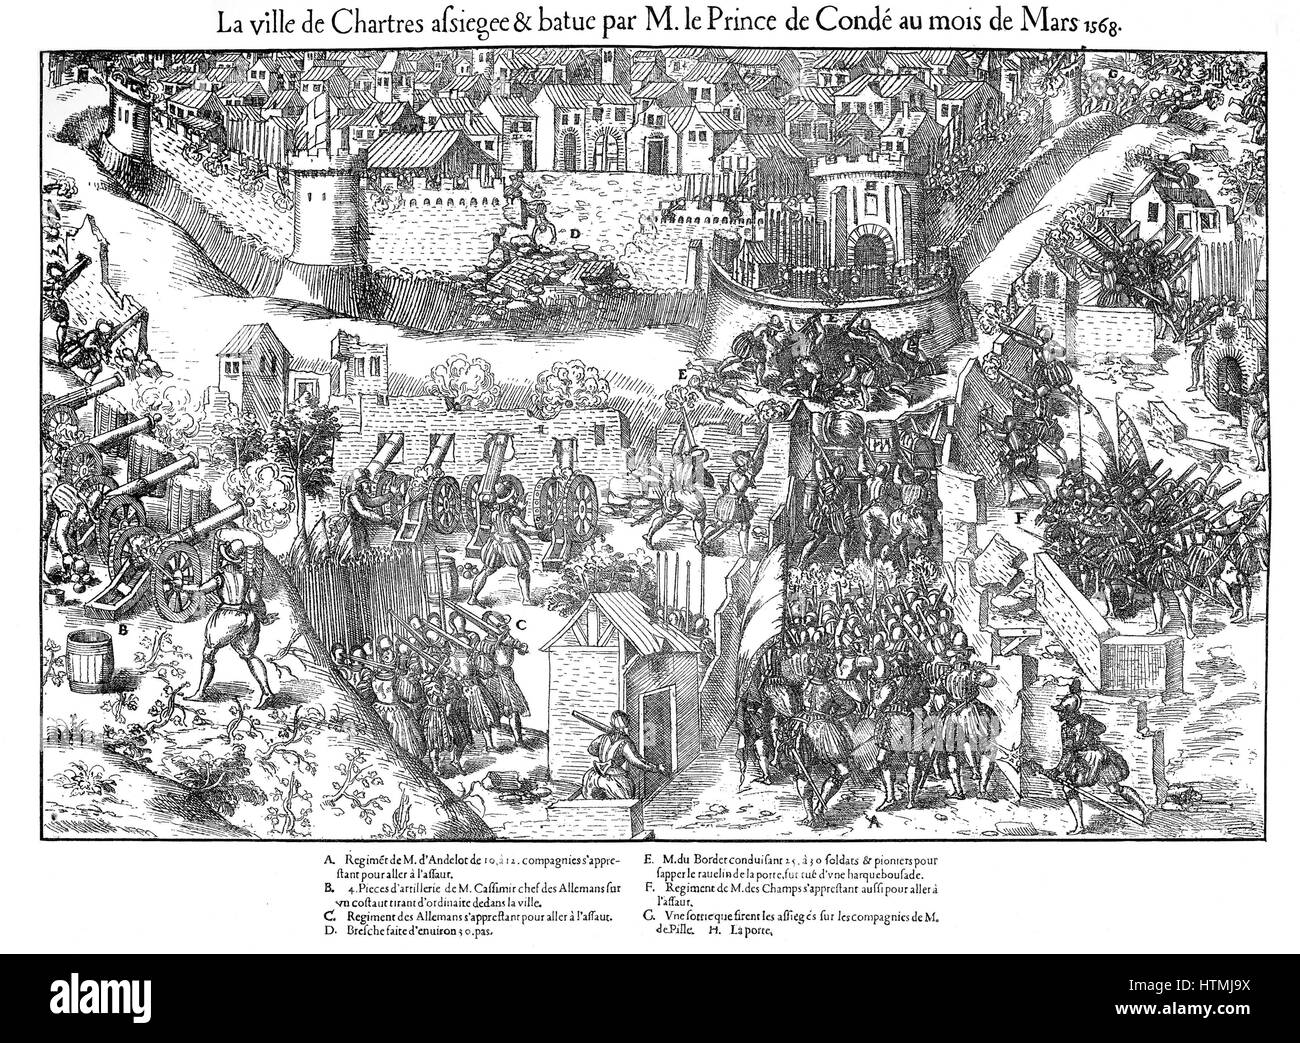 Französischen Sie Religionskriege 1562-1598. Belagerung von Chartres. Hugenotten belagert Chartres am Ende Februar 1568, Verletzung der Nordwand mit Artillerie. Angriff am 7. März nicht erfolgreich gestartet. Sapper arbeiten, um die Bastion gehörende Stadt körpereigenen untergraben Stockfoto